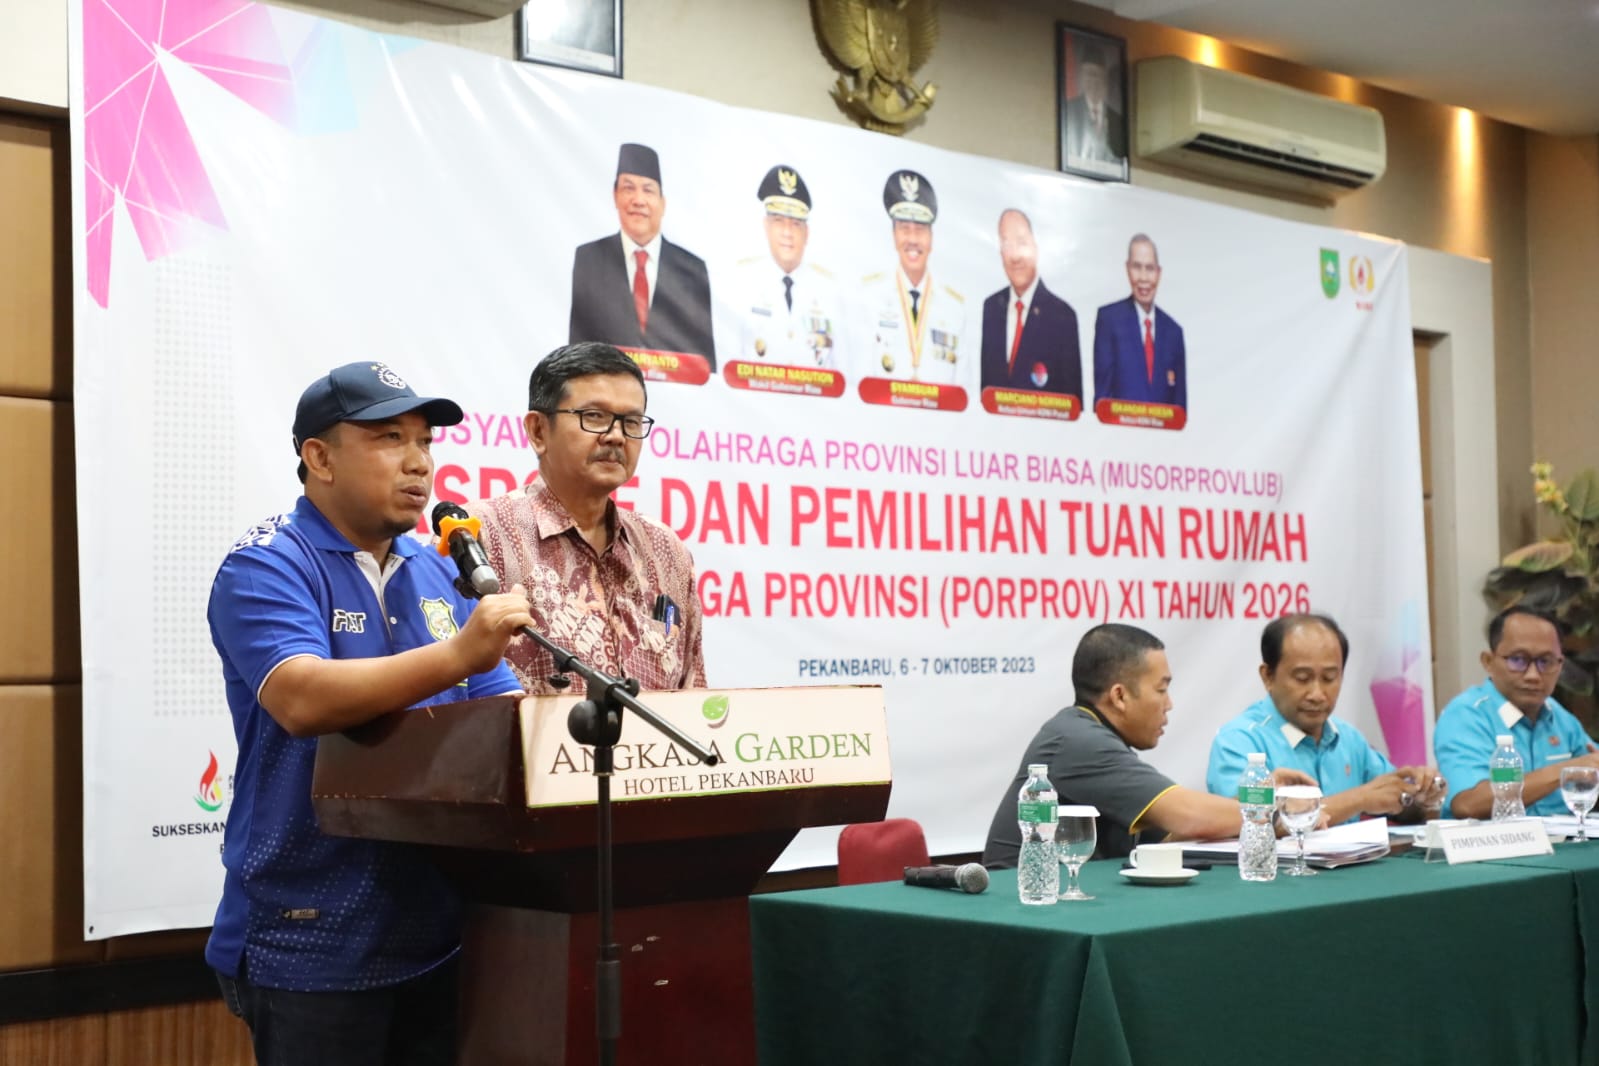 Siak dan Dumai Tuan Rumah Porprov Ke-11 Riau Tahun 2026